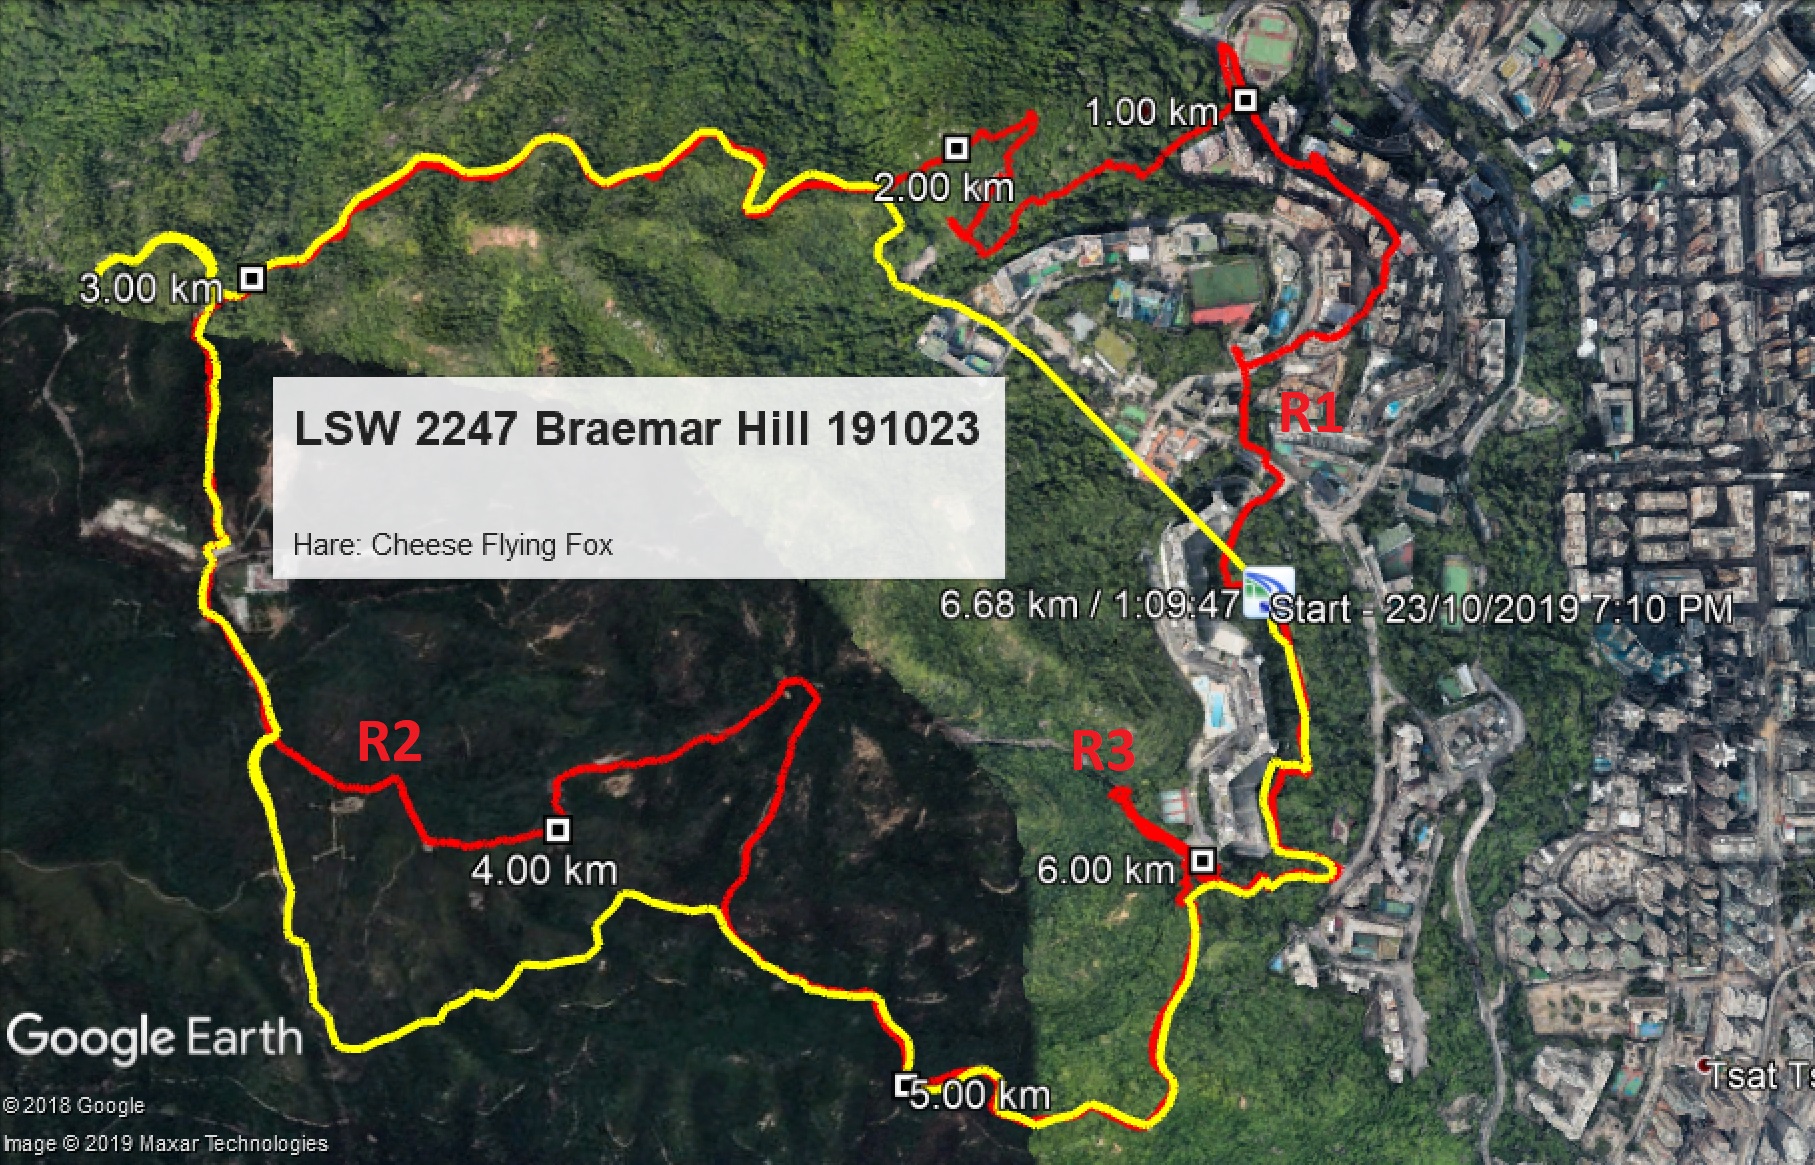 Braemar Hill 191023 6.68km 69mins